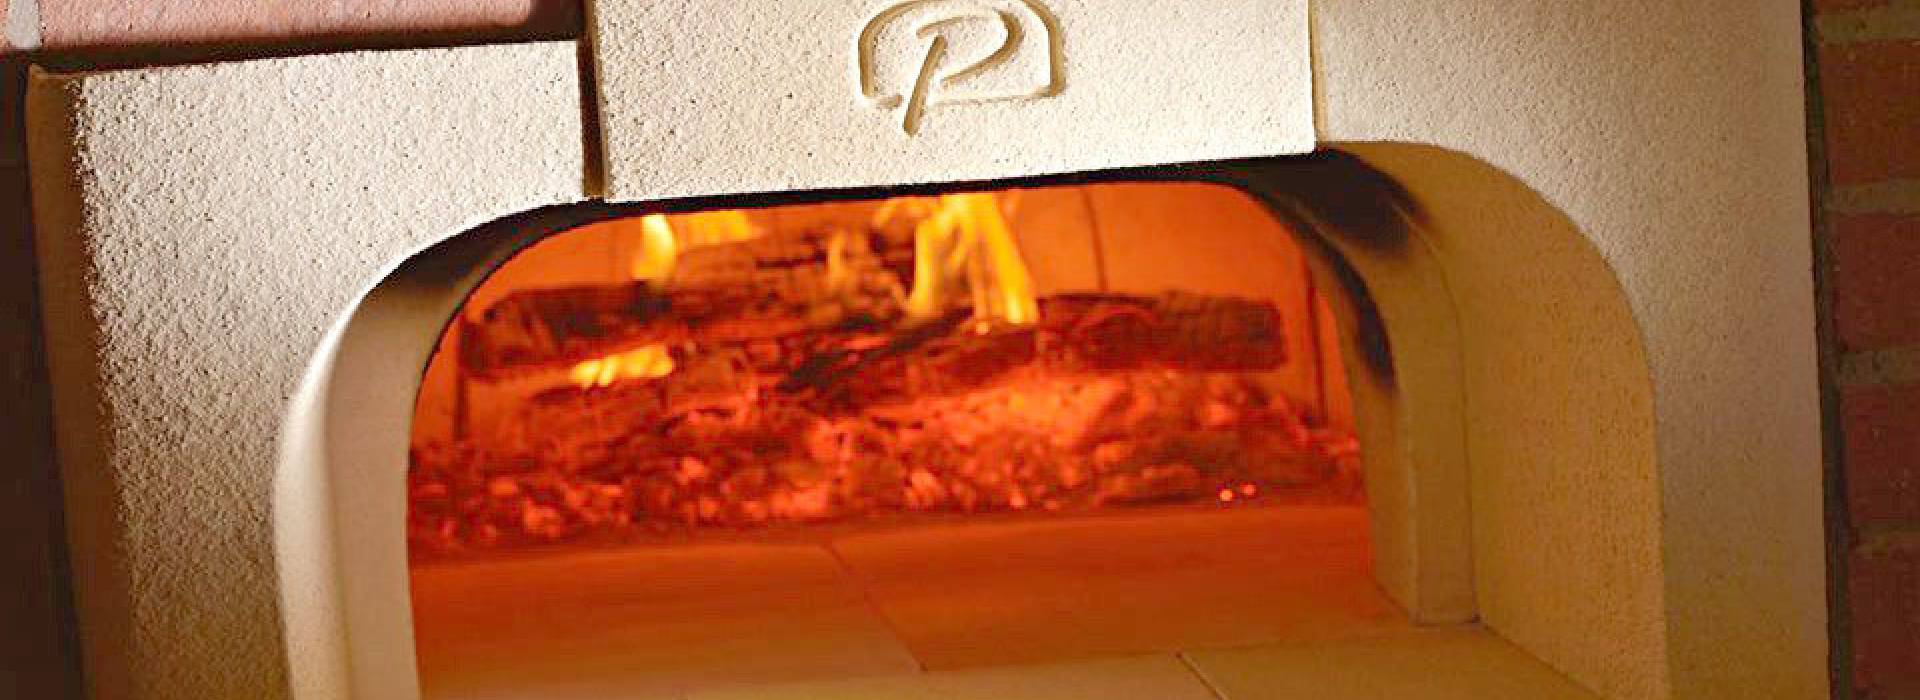 Four a Pizza, Pain - Four à bois en Terre cuite fabriqué en France